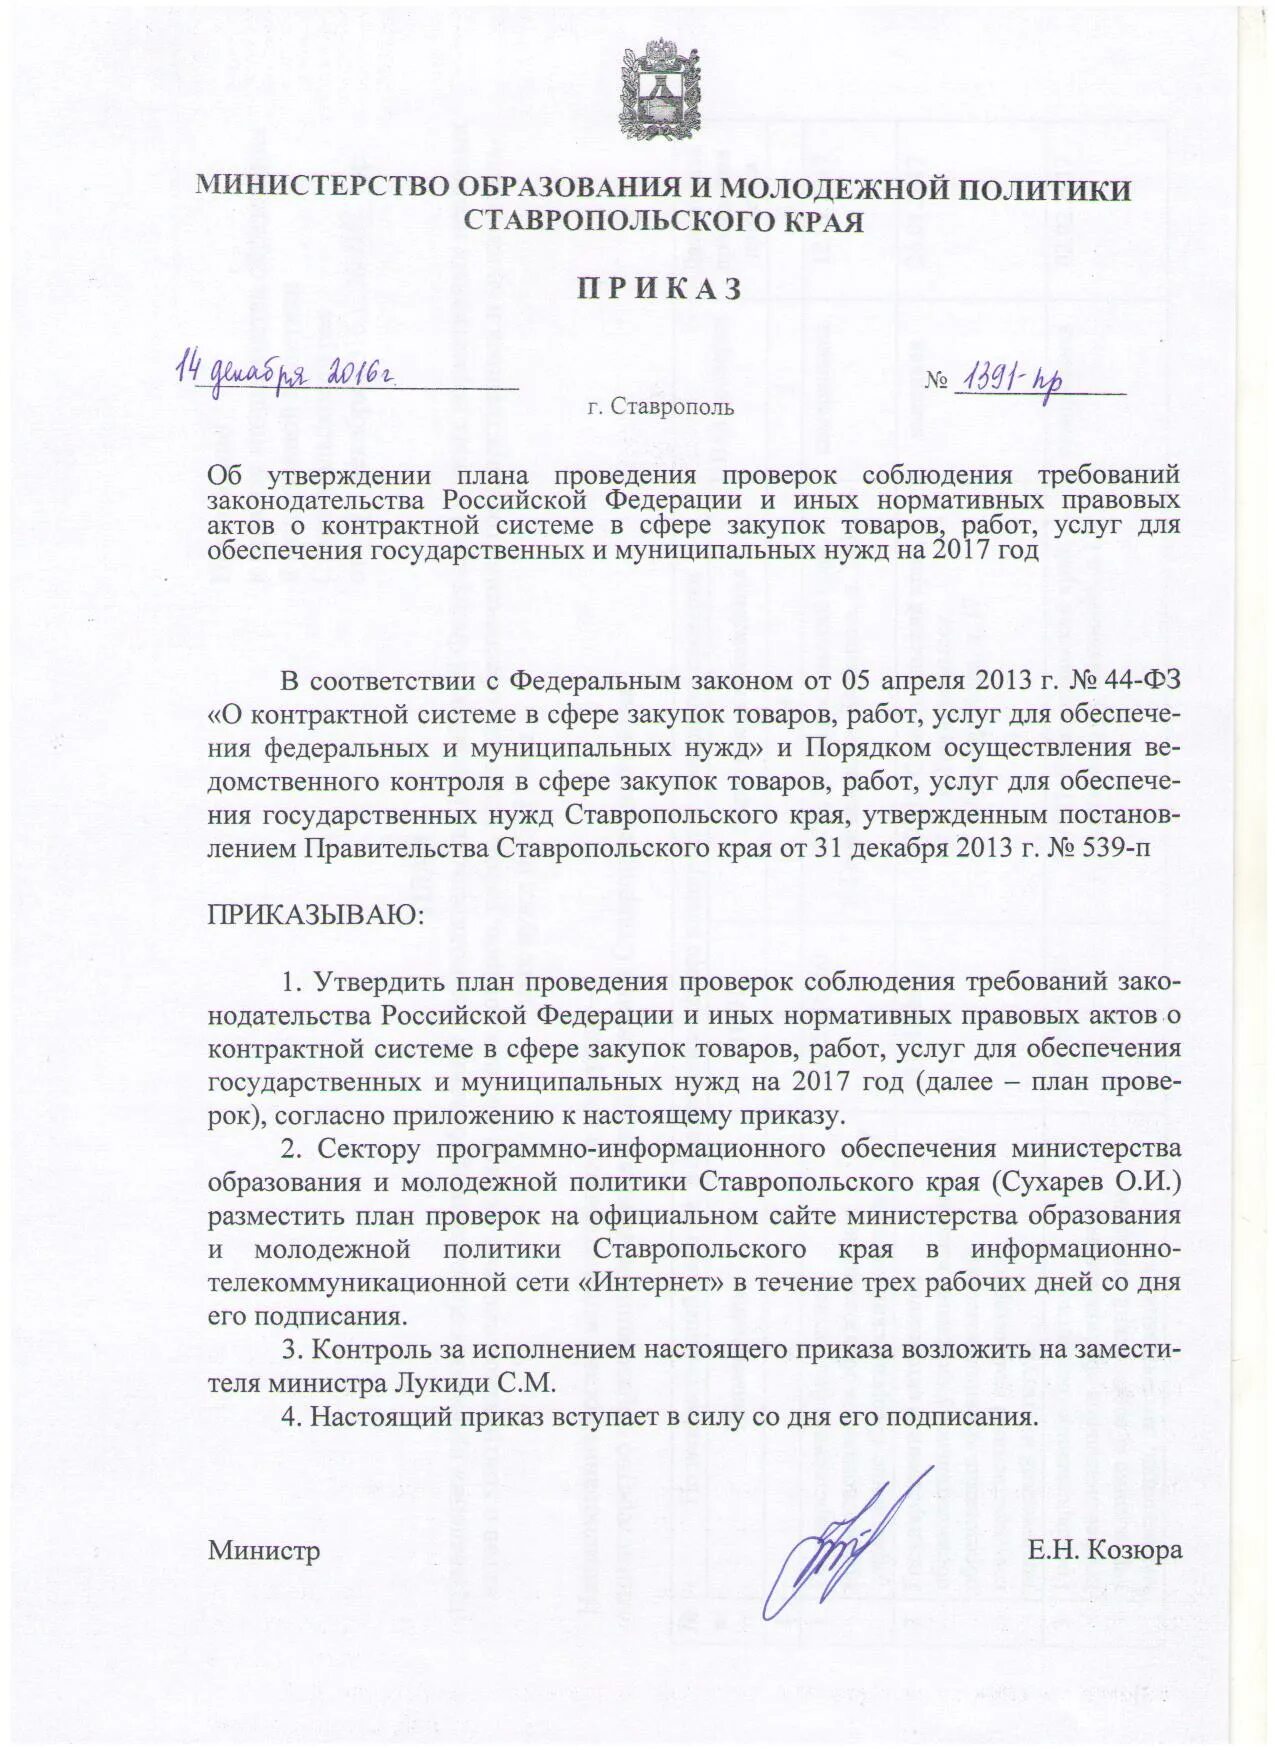 Приказ министерства образования ставропольского края